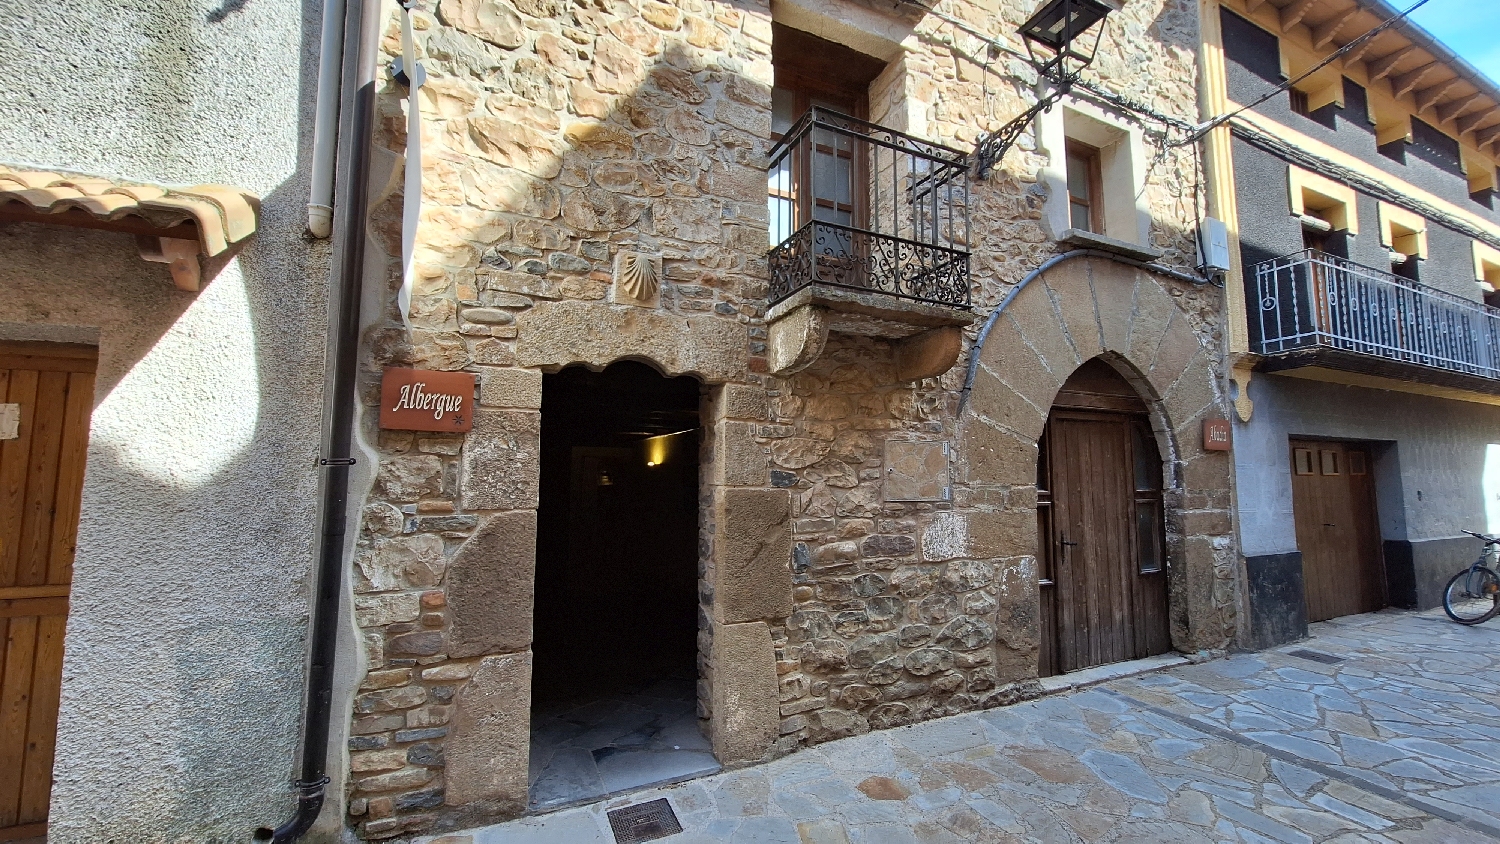 El Camino, Aragon út, Santa Cilia, a municipal albergue